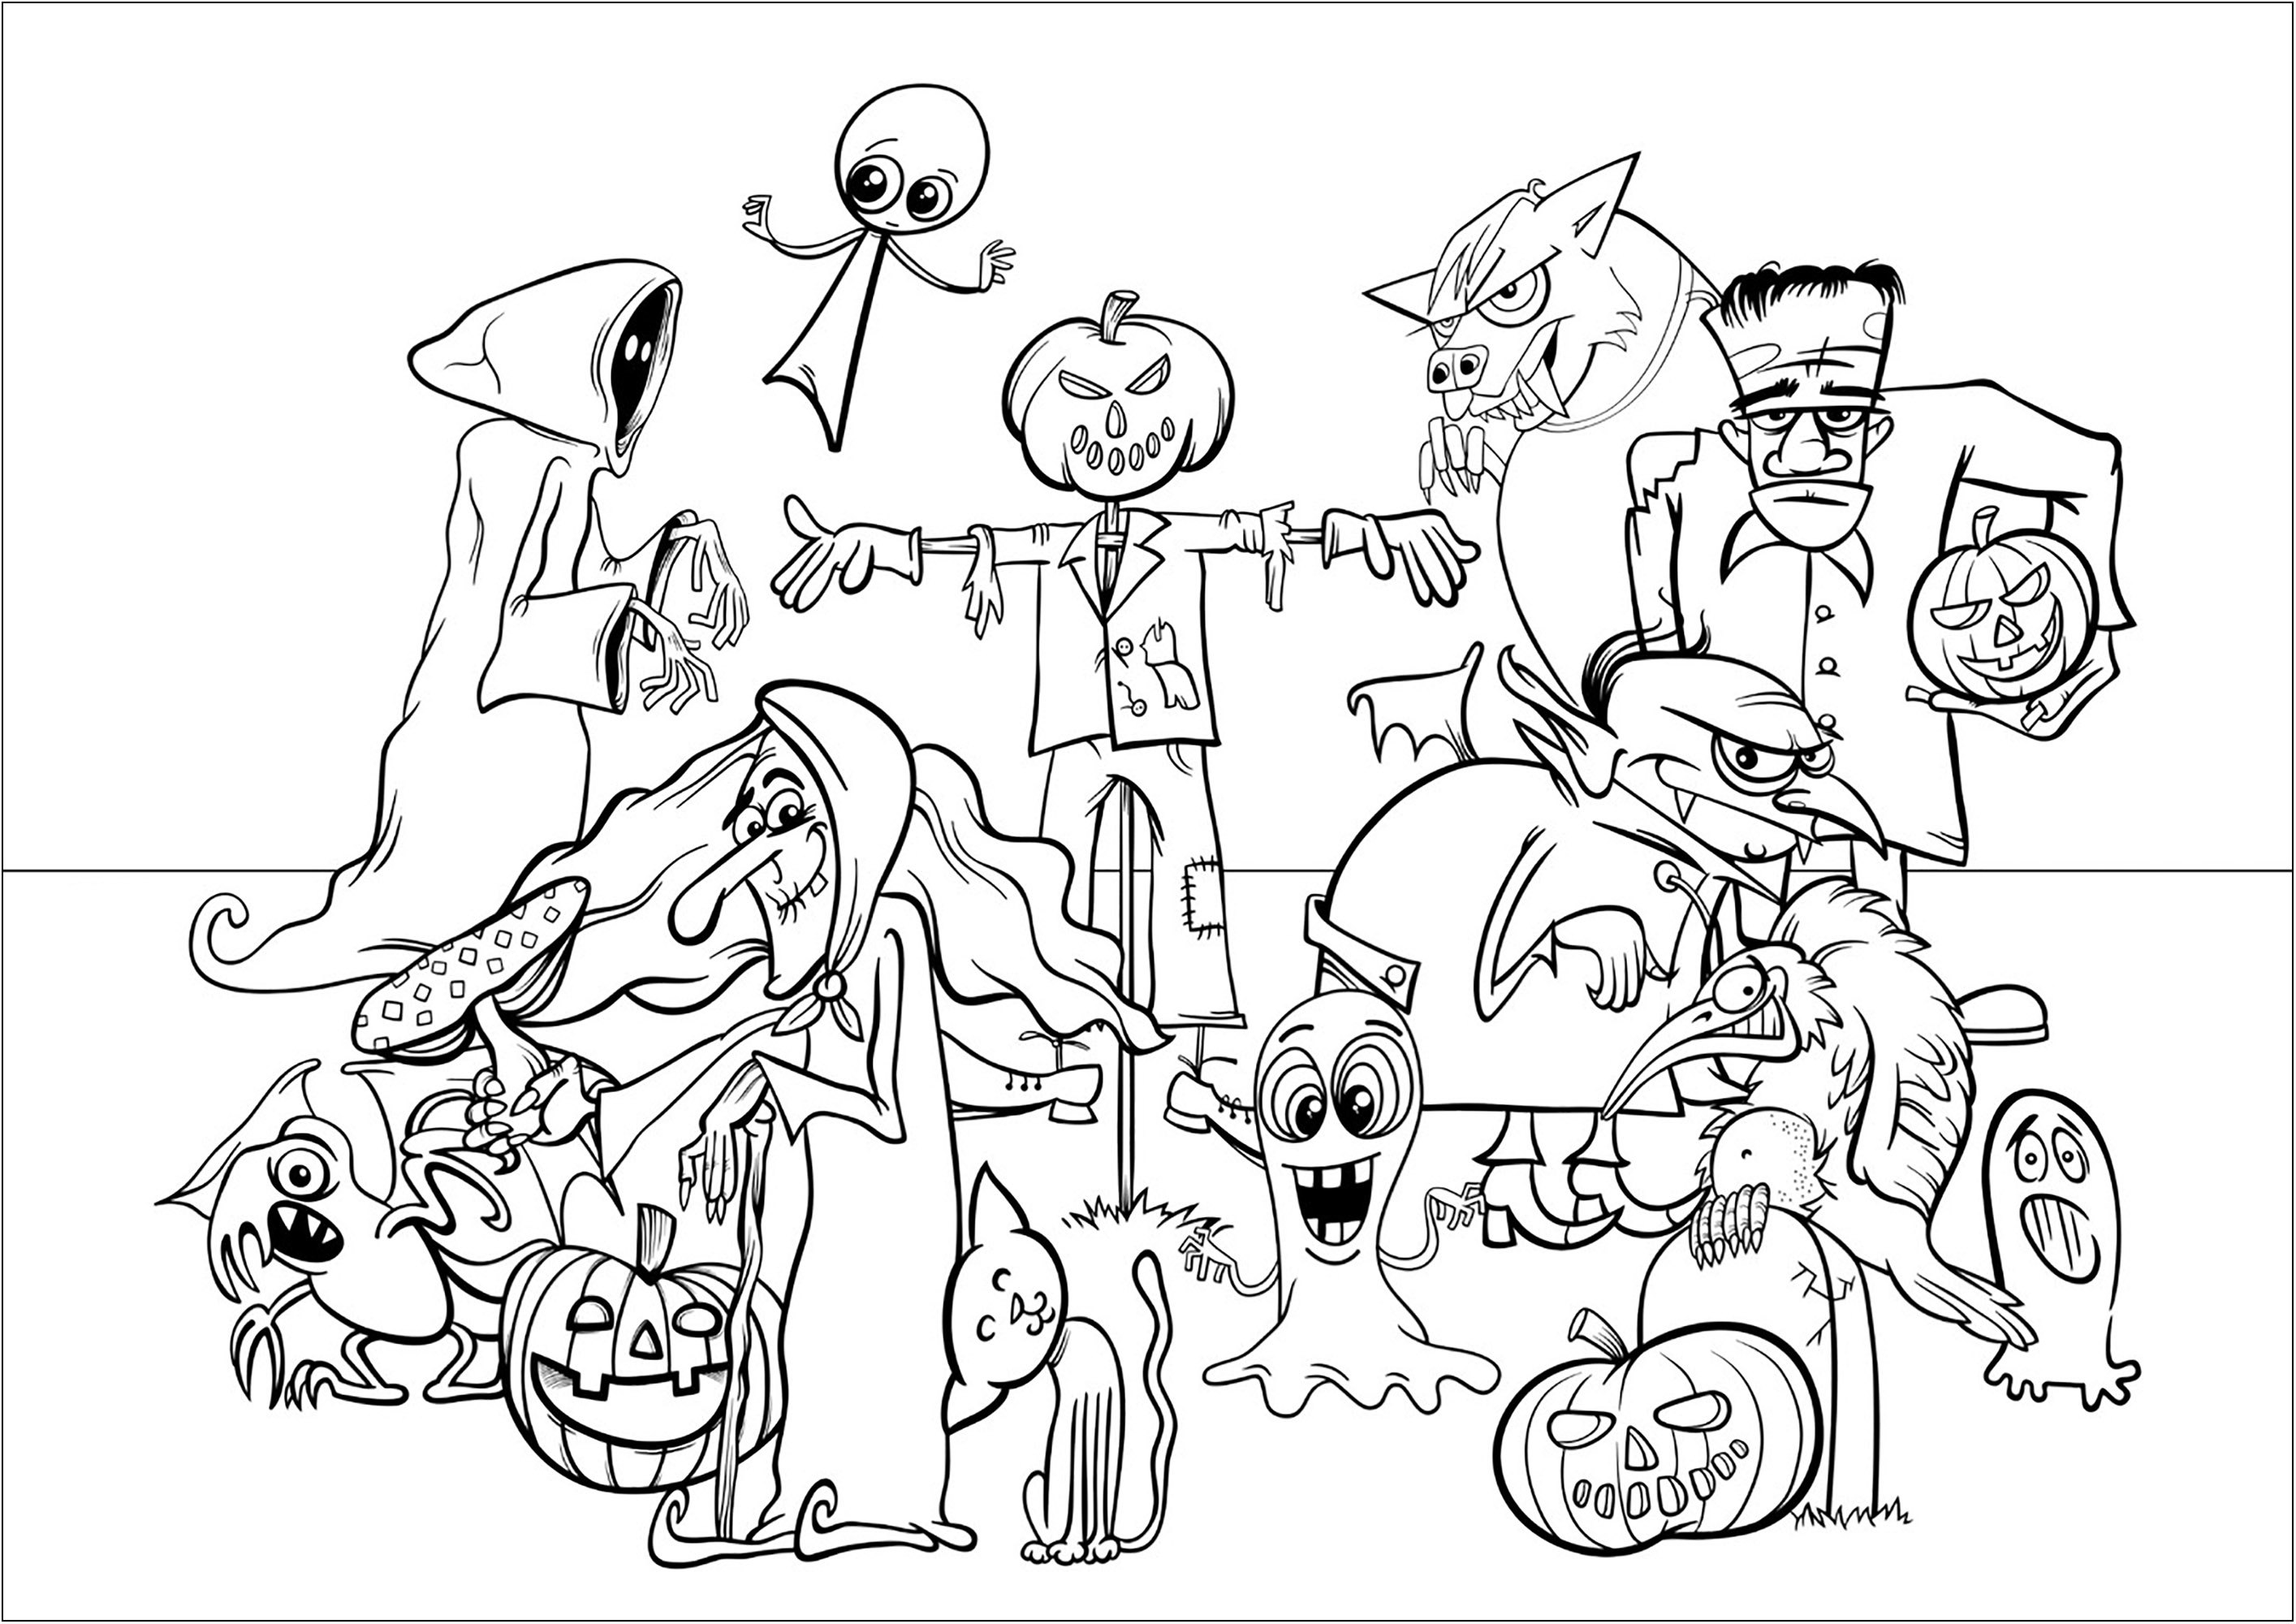 Divers personnages d'Halloween à colorier. Retrouvez dans ce coloriage une sorcière, une créature de Frankenstein, un loup garou, un zombie, et un homme à la tête de citrouille !, Source : 123rf   Artiste : Izakowski